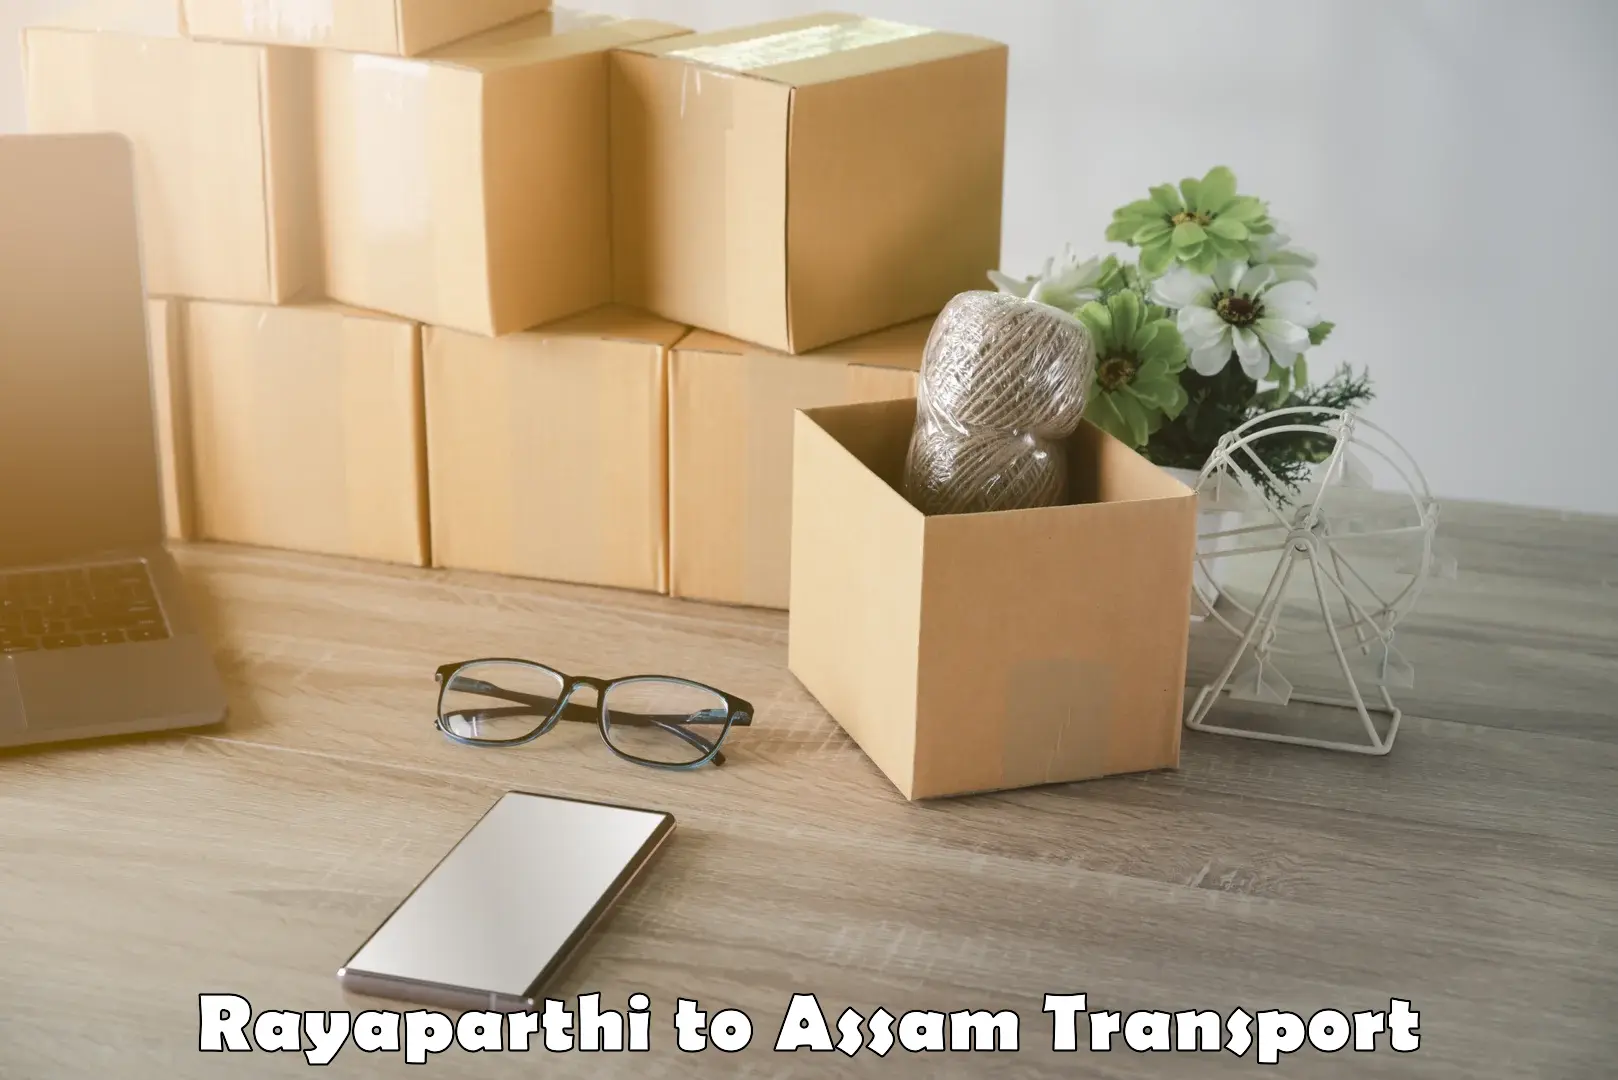 Pick up transport service Rayaparthi to Hajo